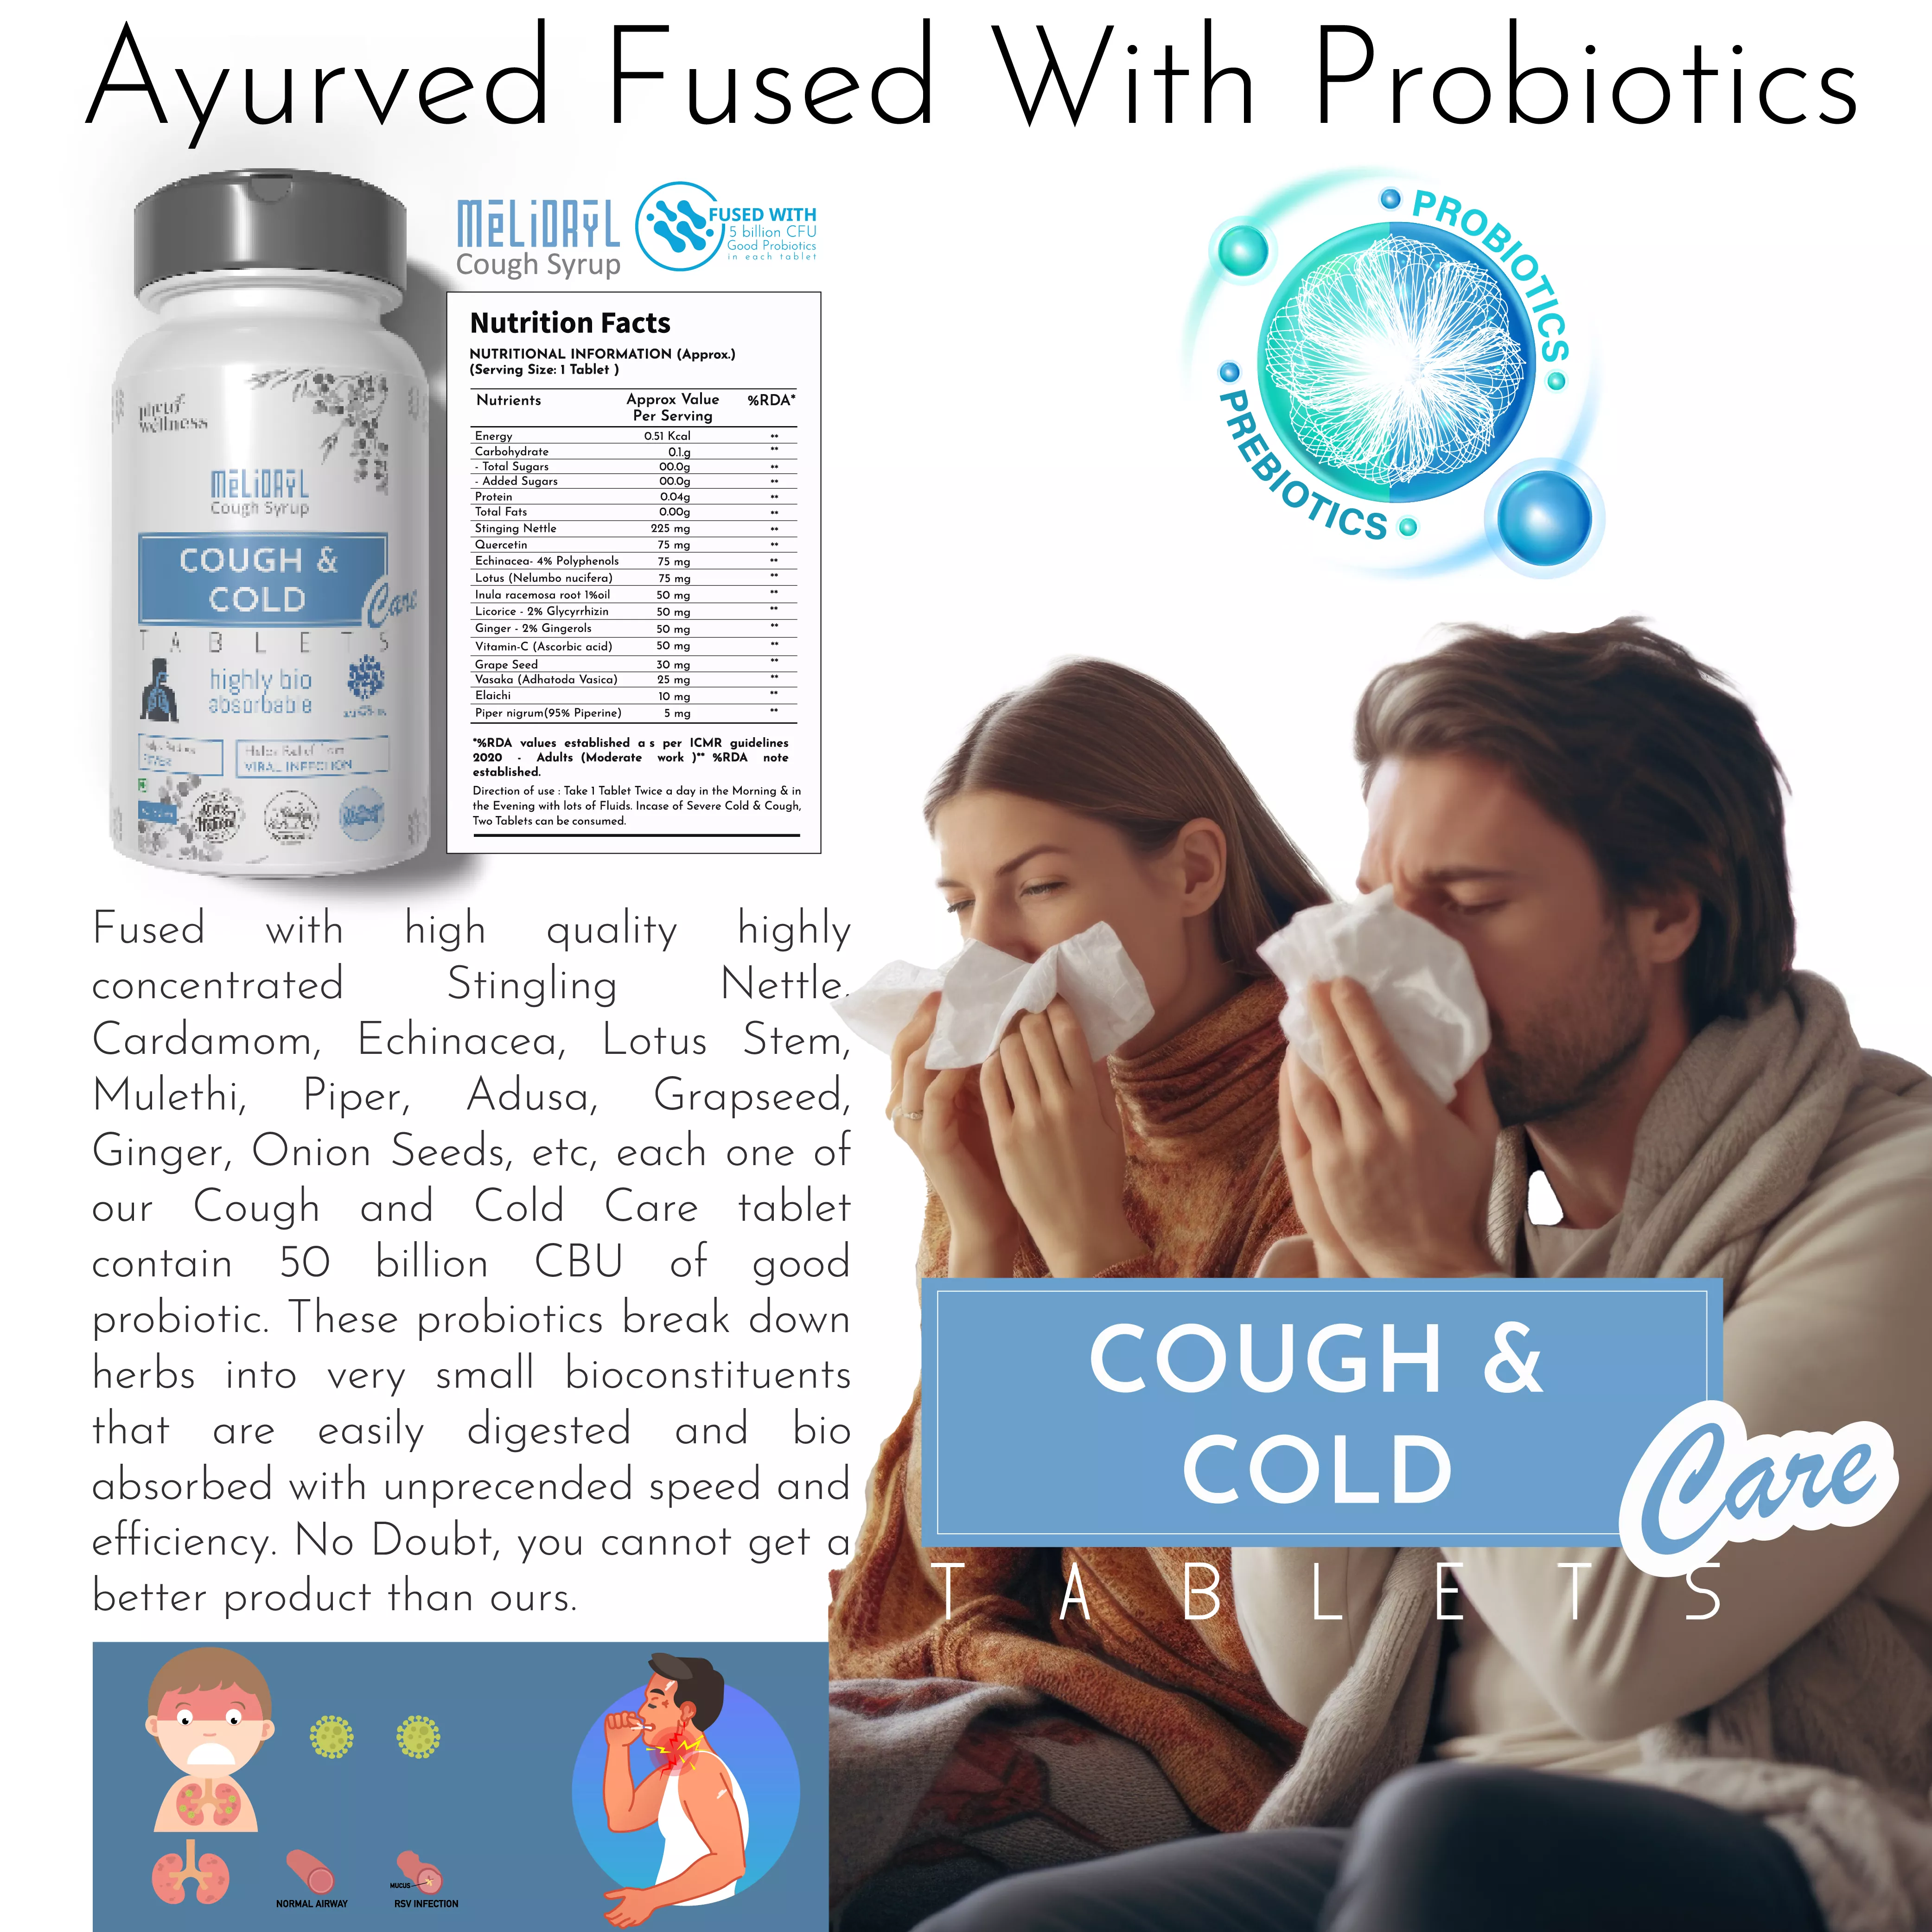 Probiotic Cough Care 60 Tablets